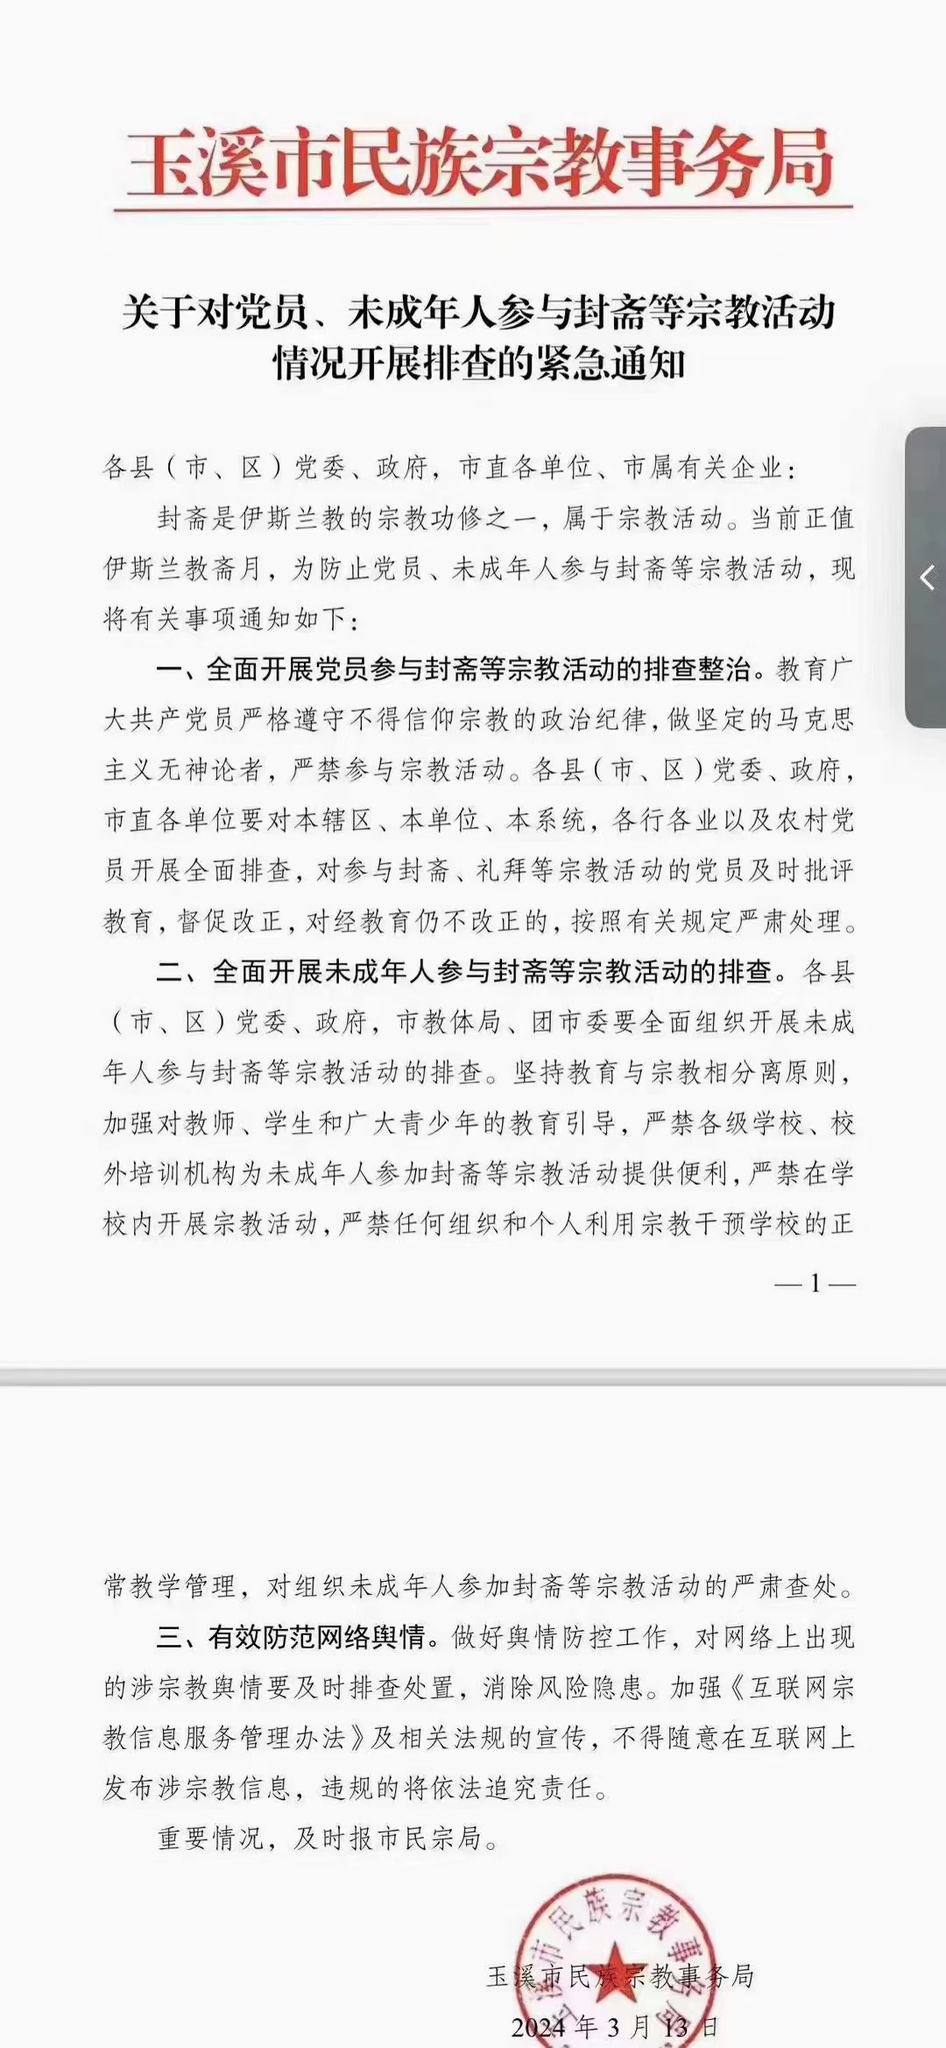 云南玉溪市政府在斋戒月发布通知，限制穆斯林共产党员和未成年人进行斋戒。